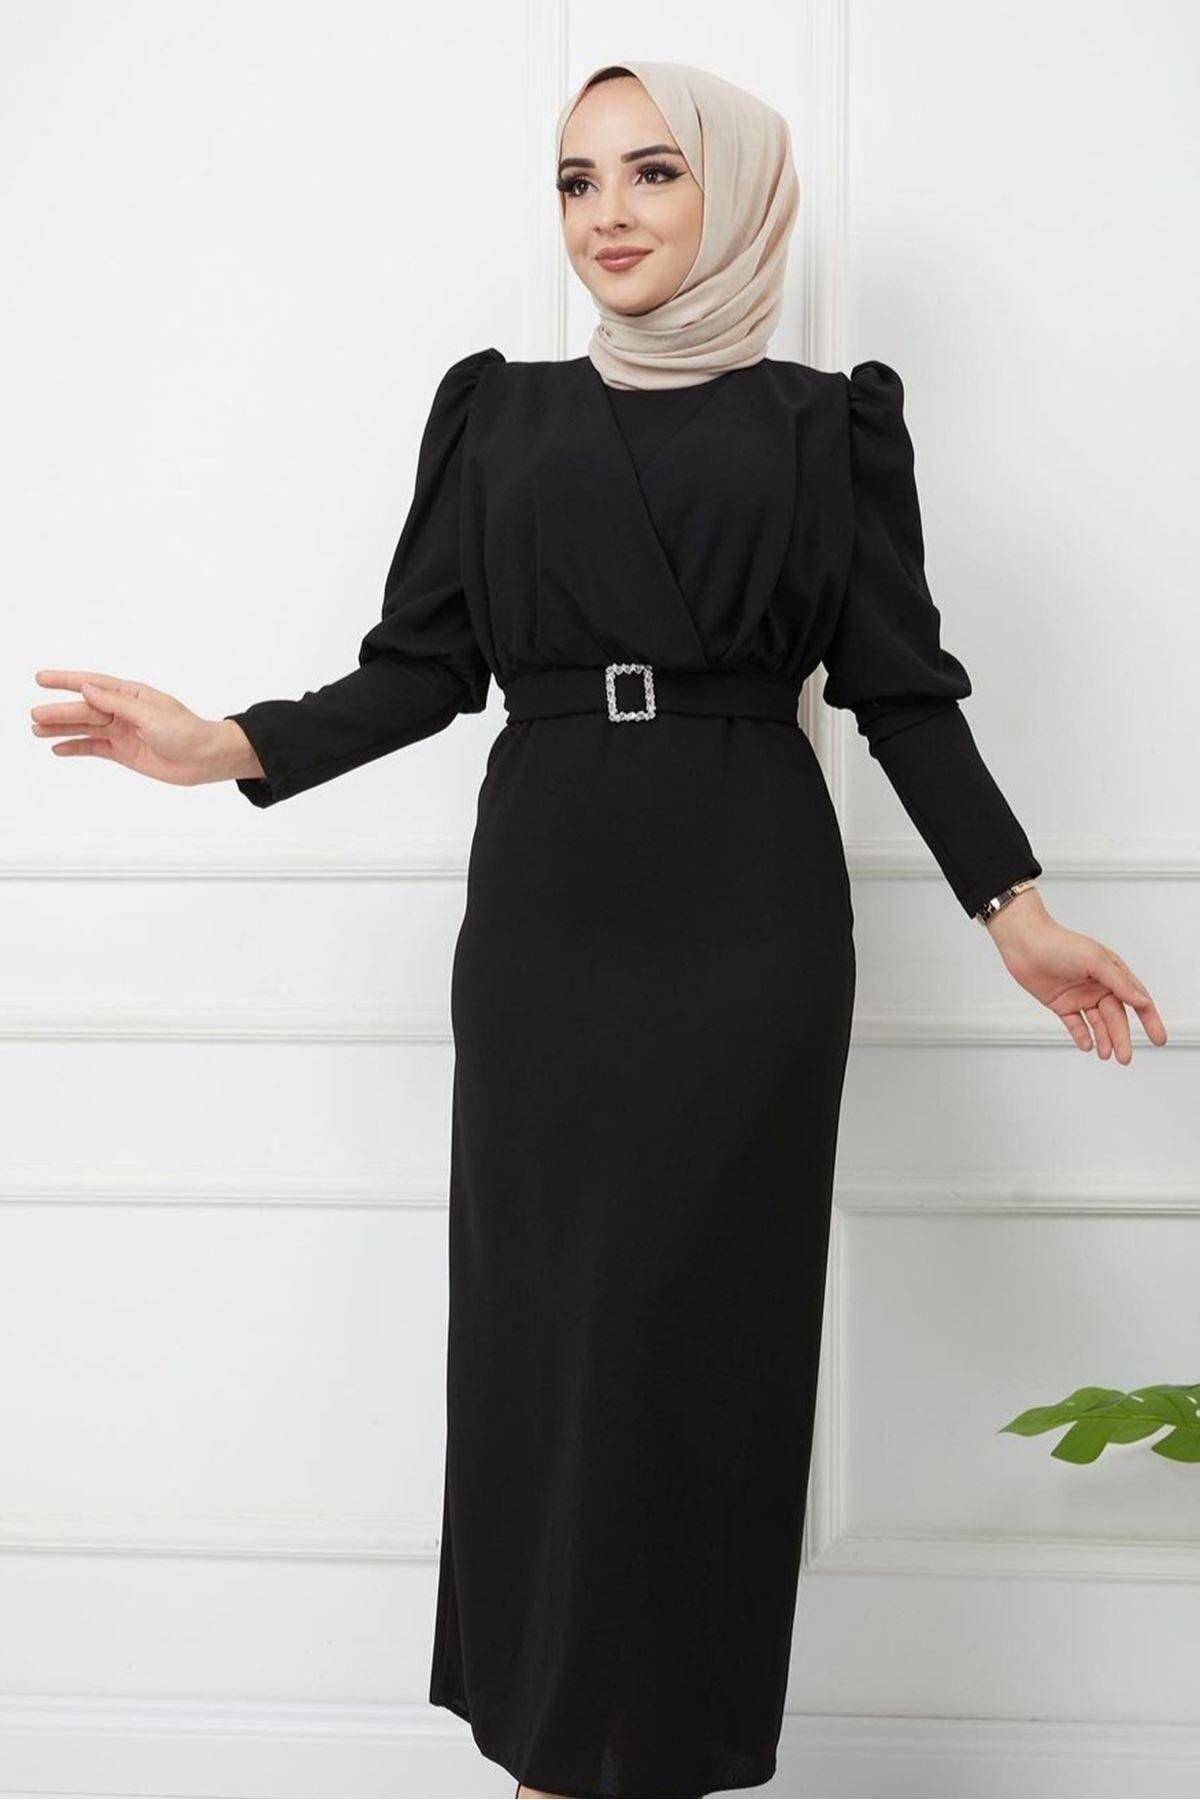 Ebrar Store Önü Çapraz Detay Balon Kol Kalem Elbise-ge5110-siyah